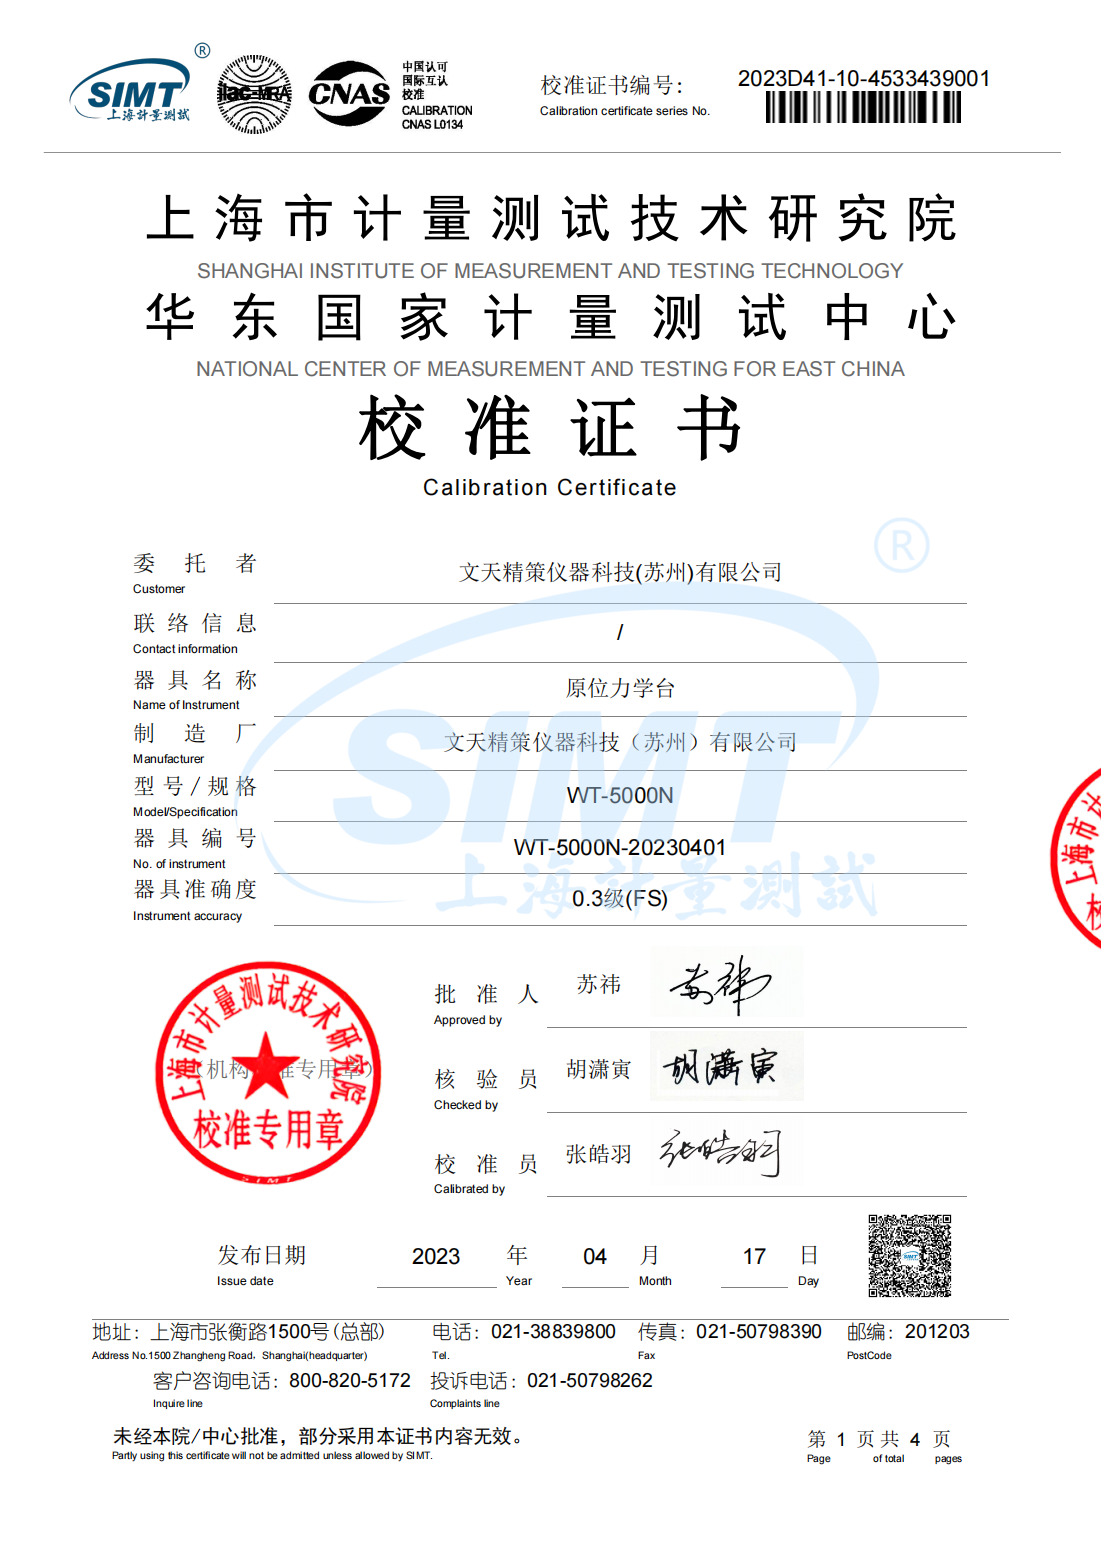 文天精策原位力学台通过检测获得华东国家计量测试中心的校准证书